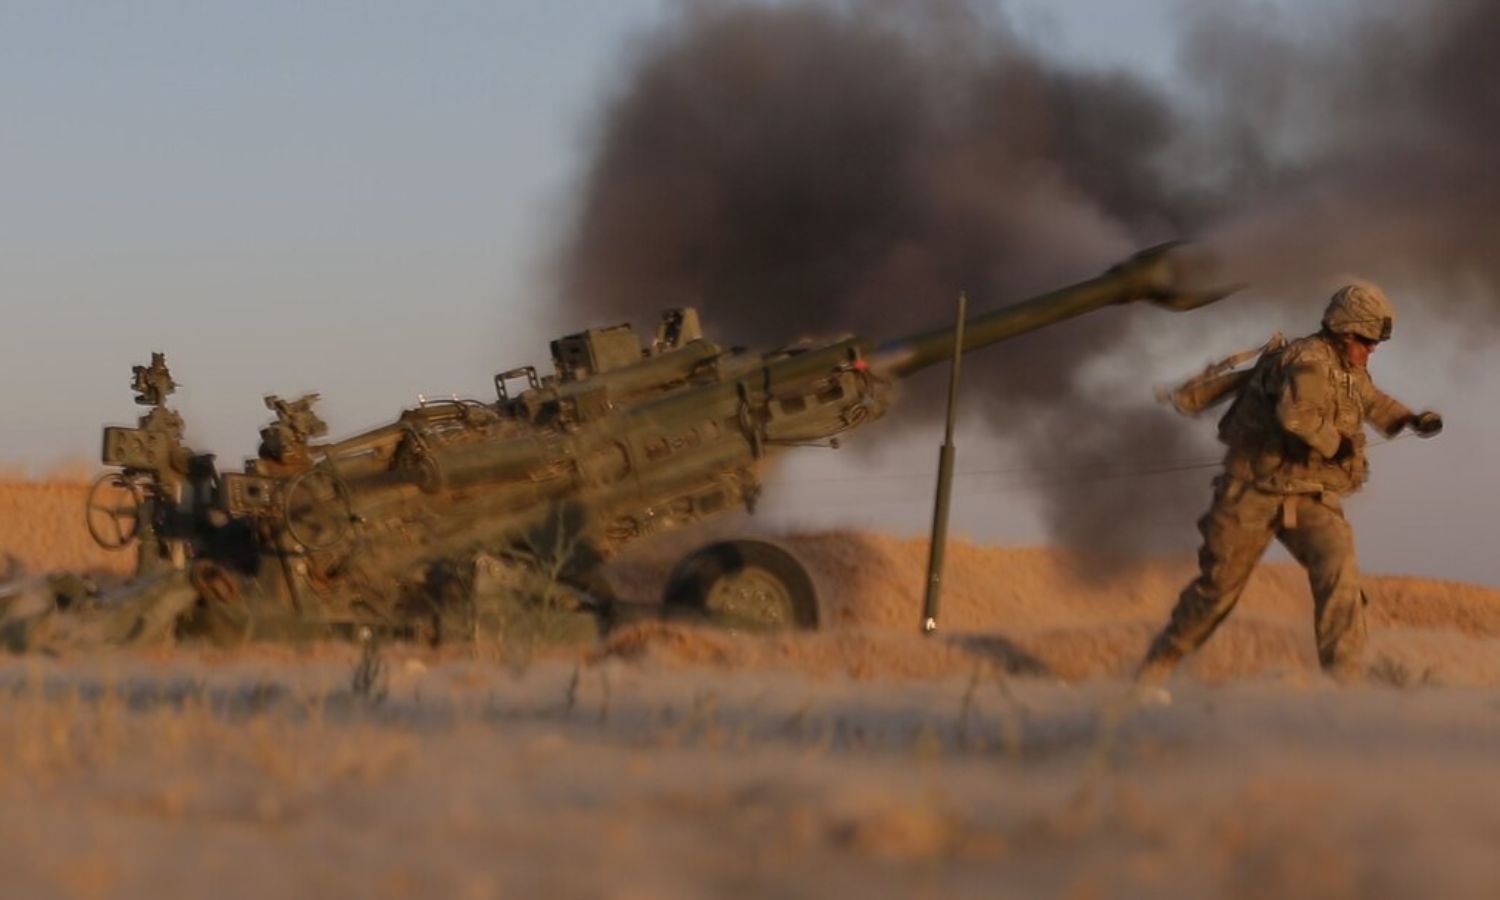 جنود من الجيش الأمريكي من الفوج الثالث يطلقون نيران المدفعية على مواقع لتنظيم الدولة بالقرب من الحدود العراقية السورية- 5 من حزيران 2018 (سينتكوم)